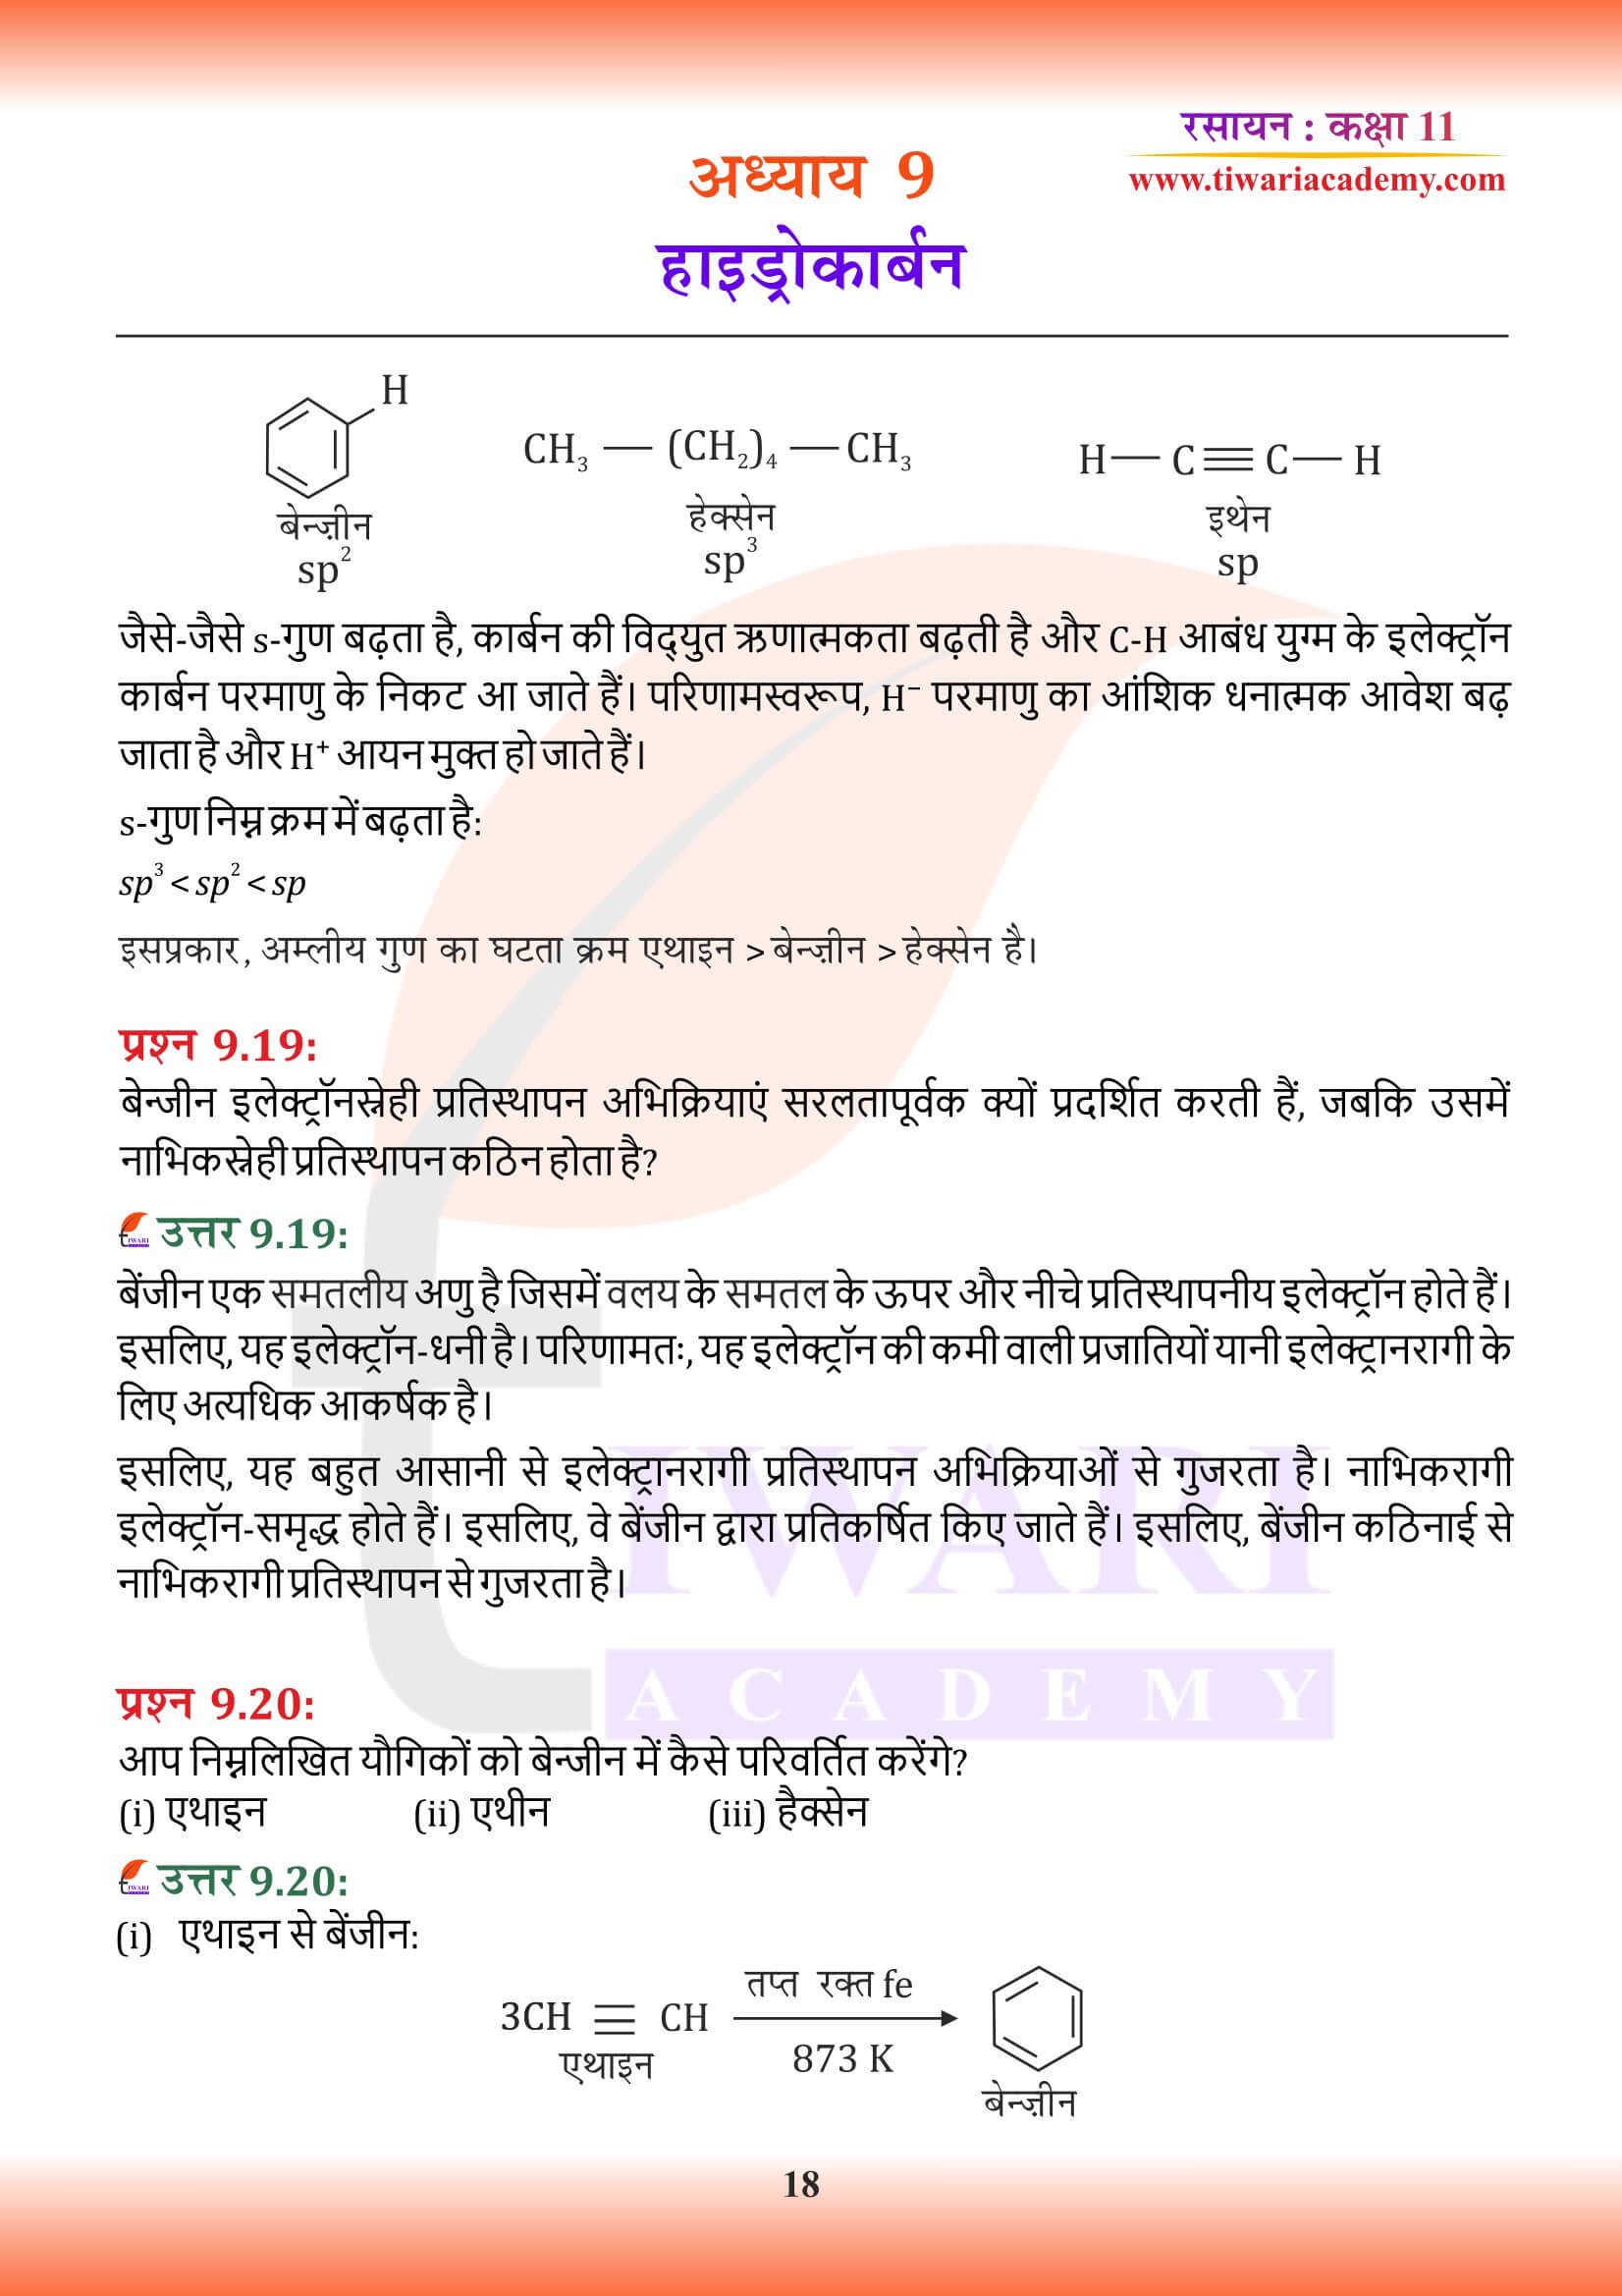 कक्षा 11 रसायन अध्याय 9 के उत्तर